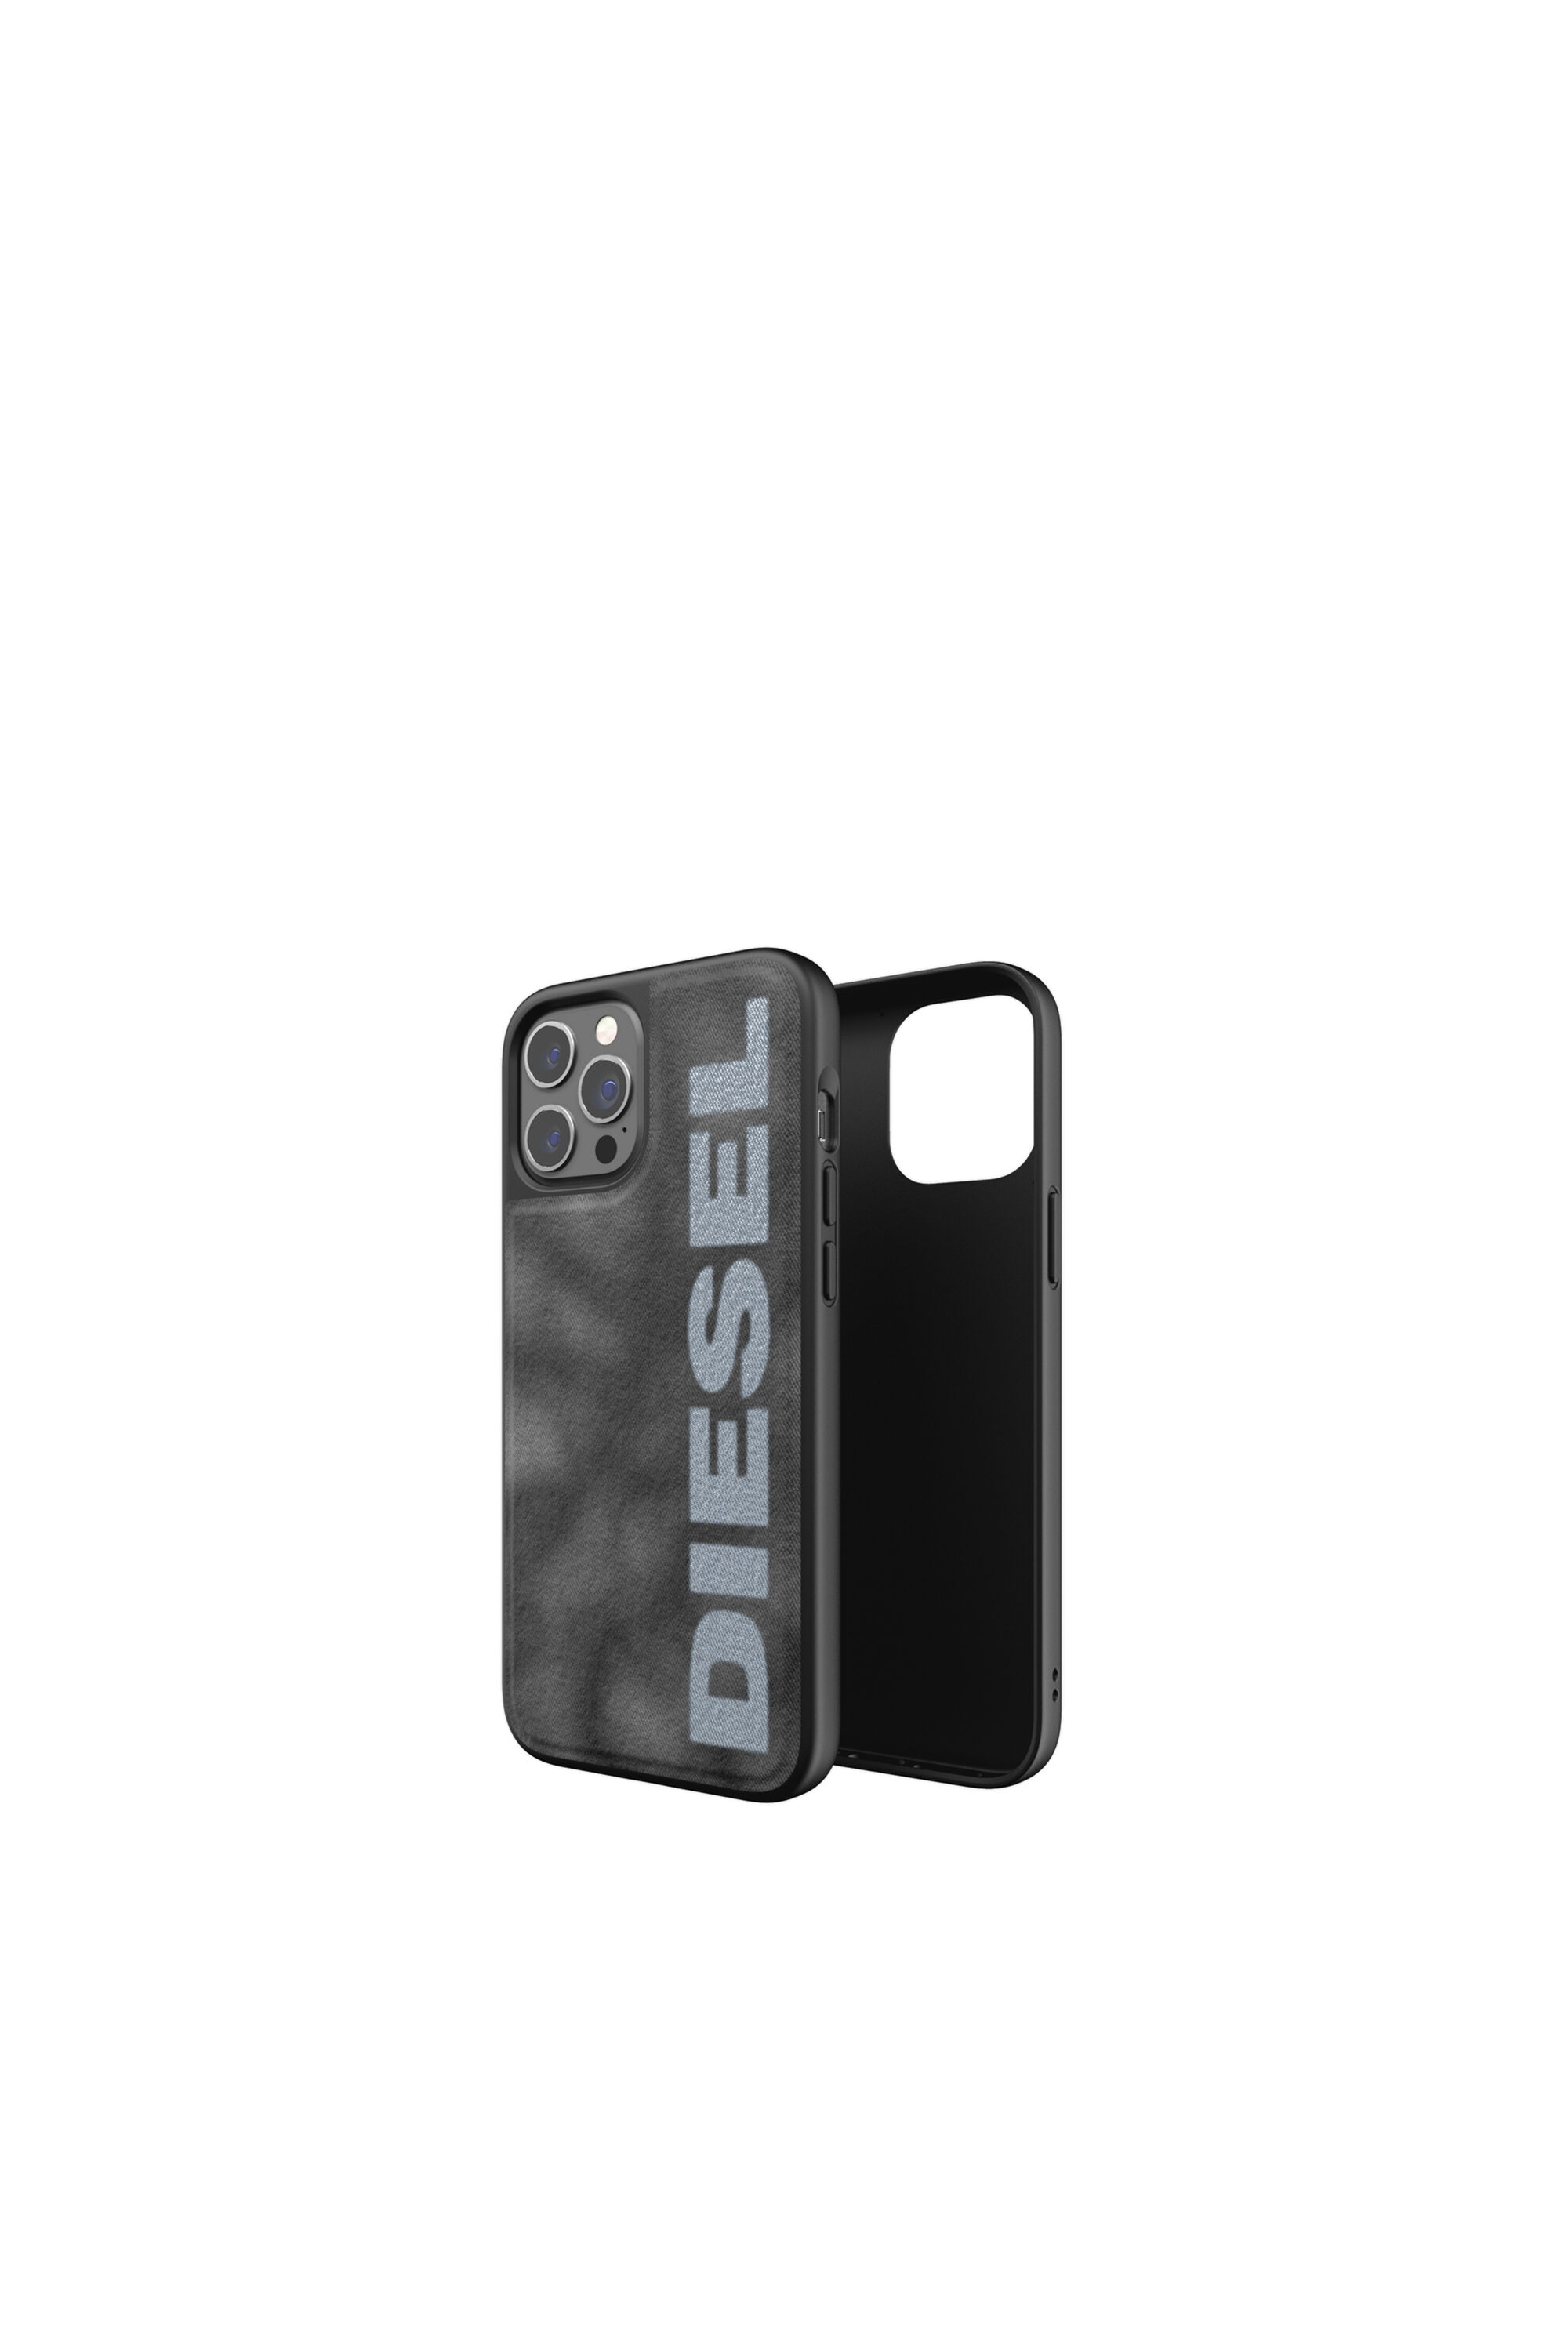 Diesel - 44298  STANDARD CASES, Black/Grey - Image 1